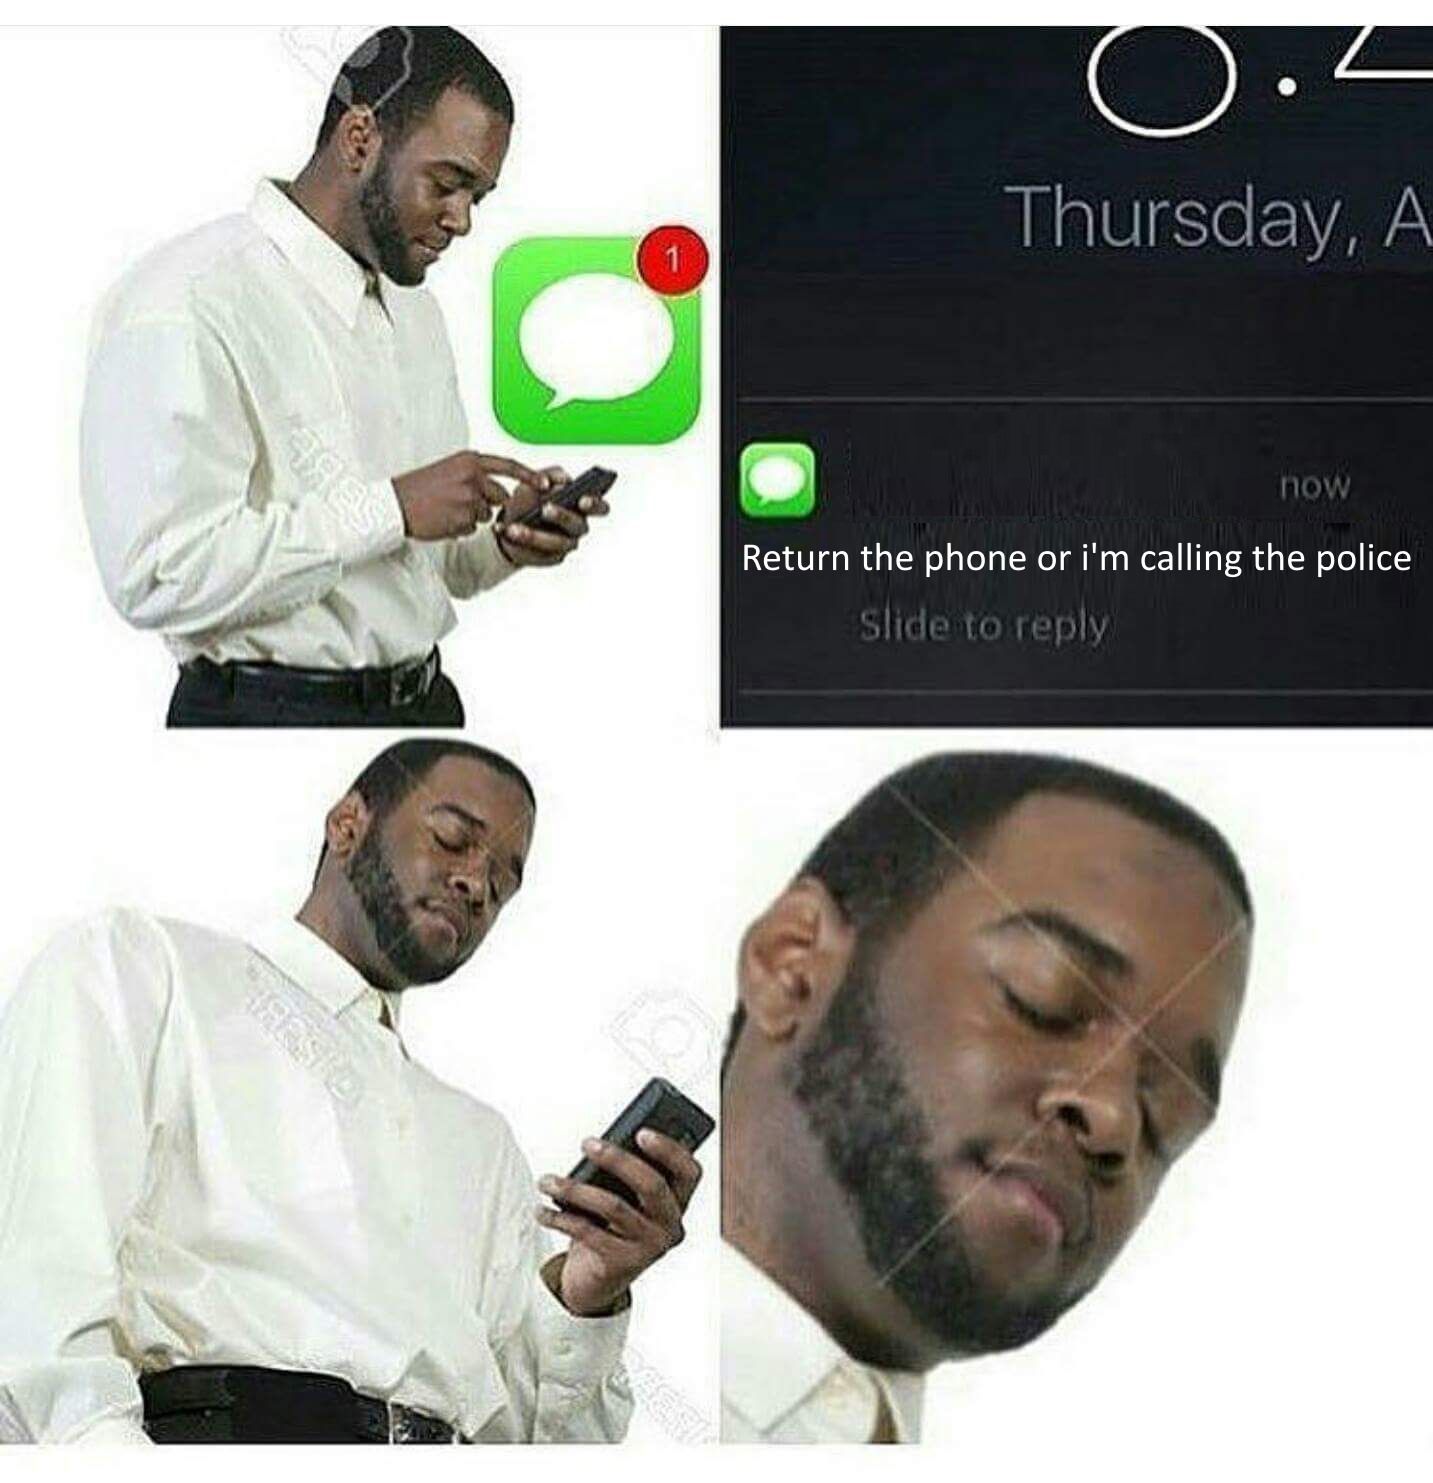 Those texts Ɛ>